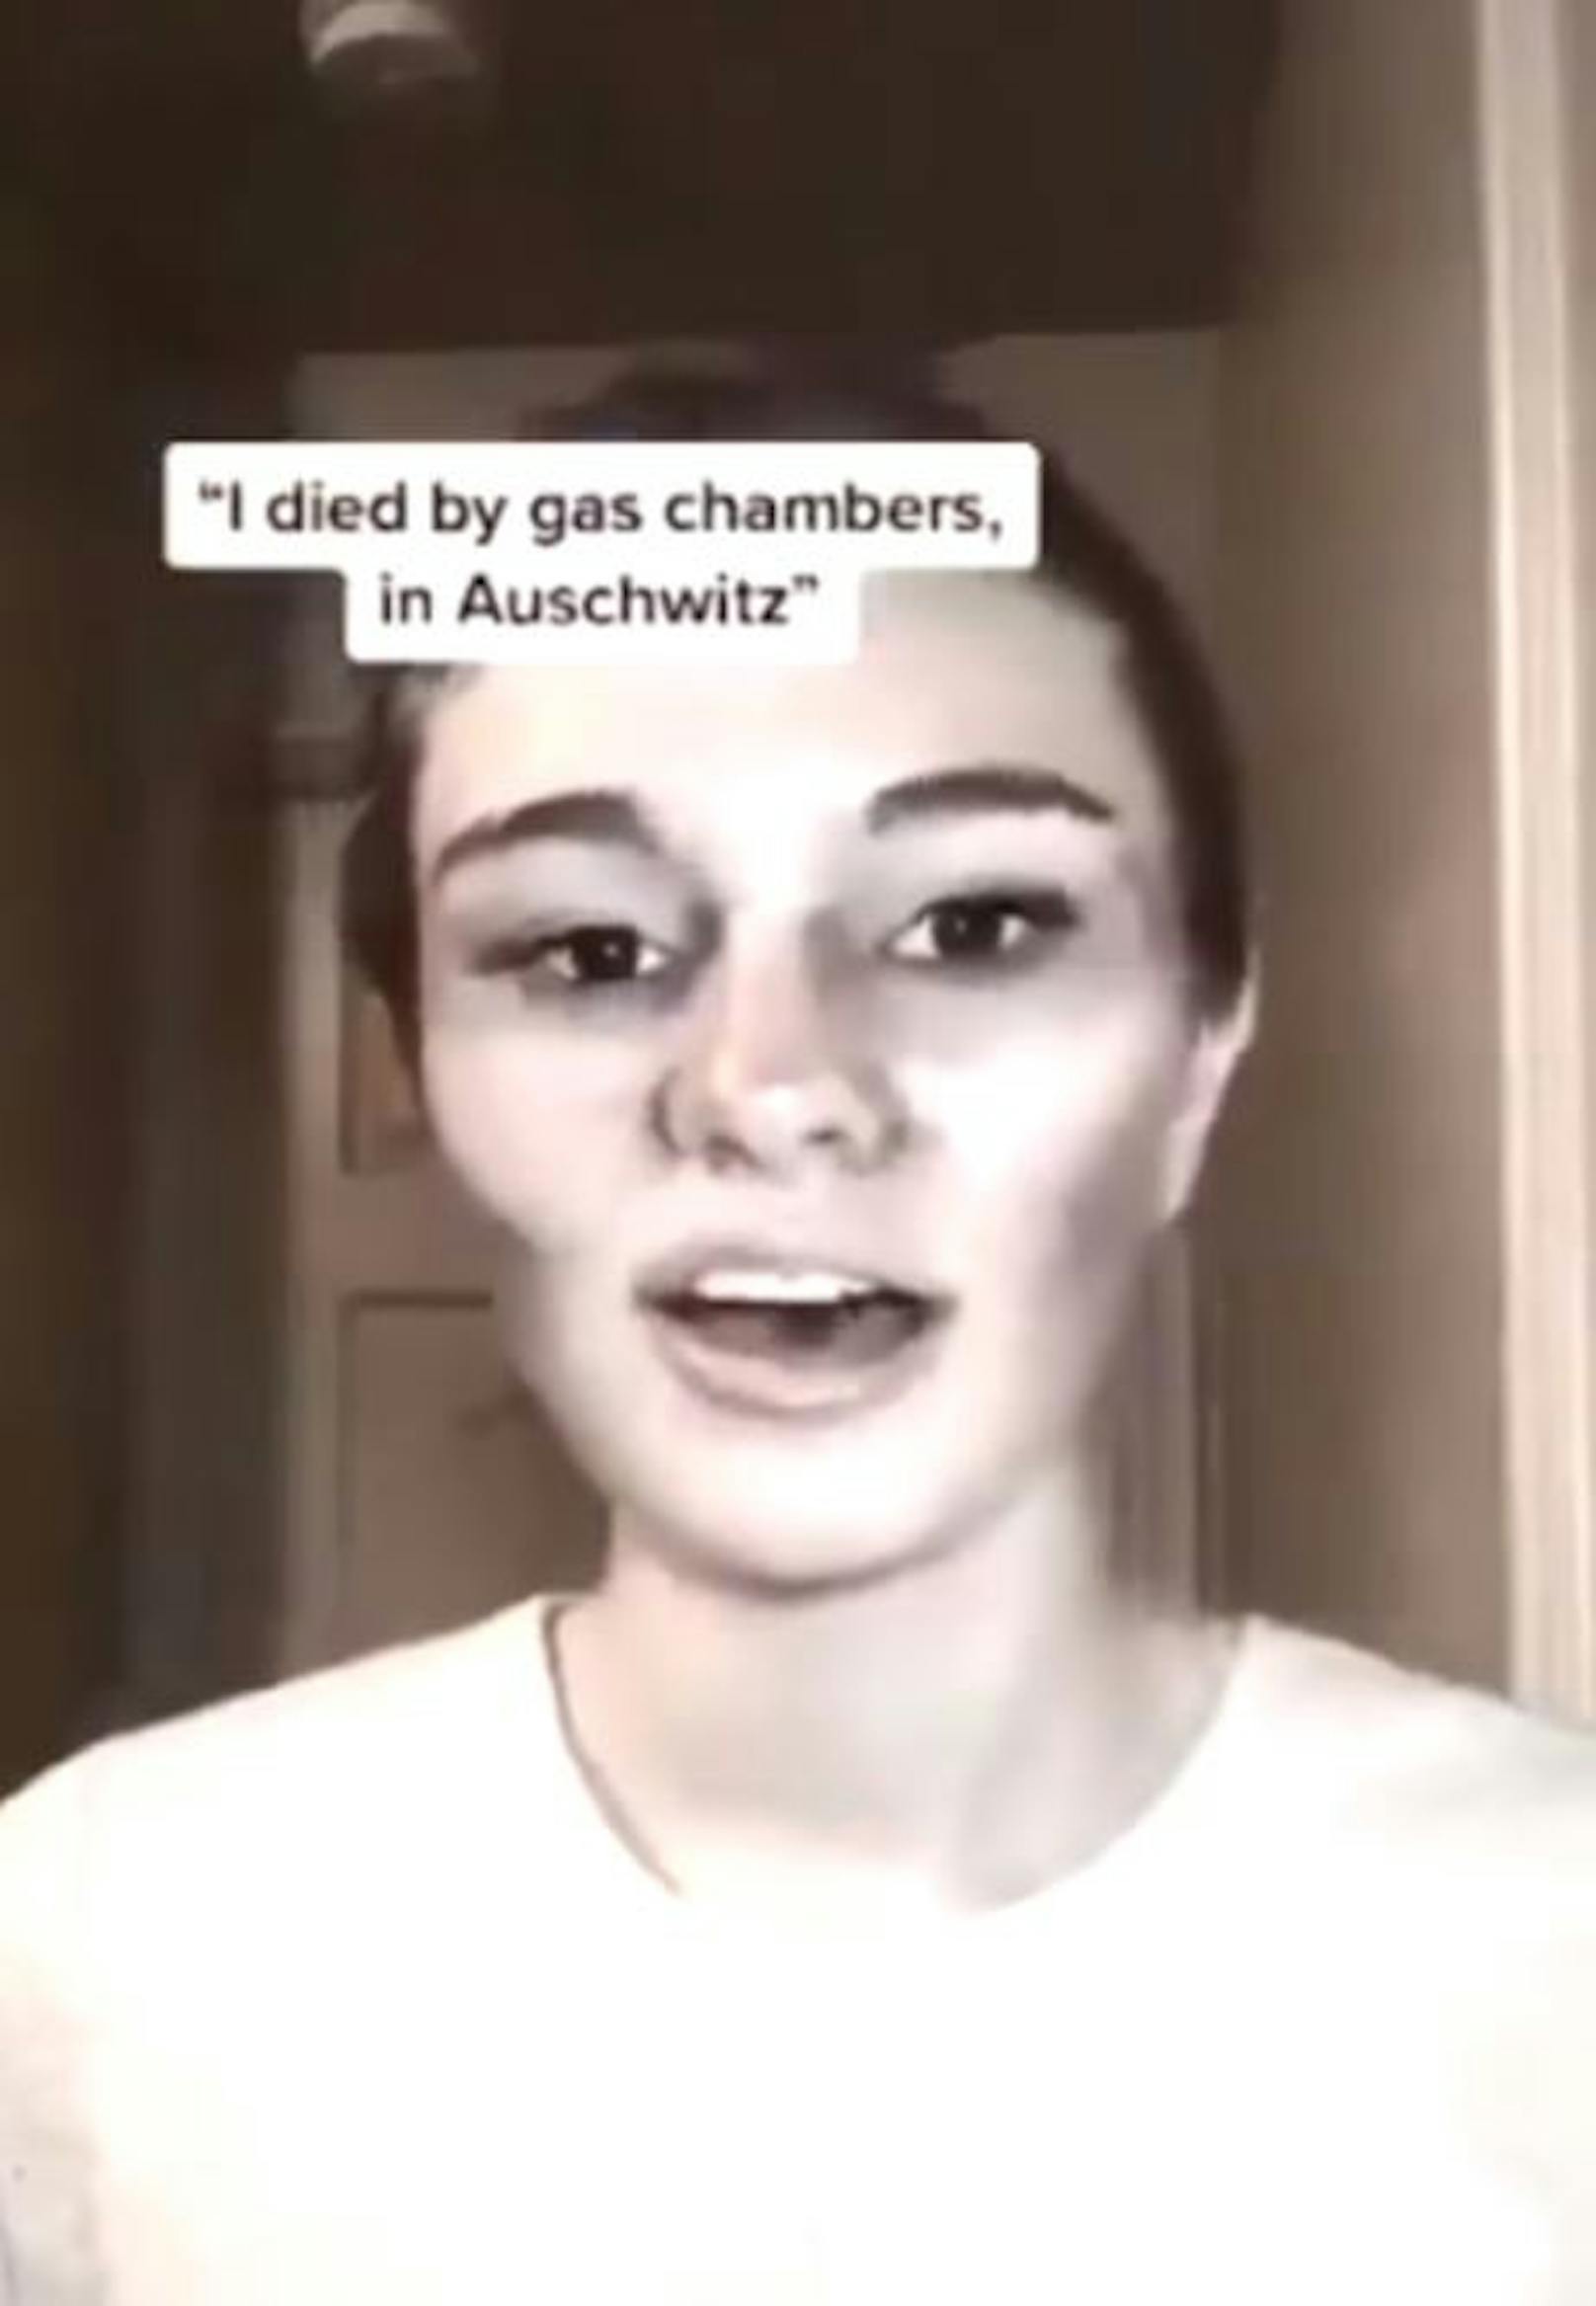 In mit Musik unterlegte Videos sagen sie "Oh hi, willkommen im Himmel" oder "Ich starb durch die Gaskammern in Auschwitz."